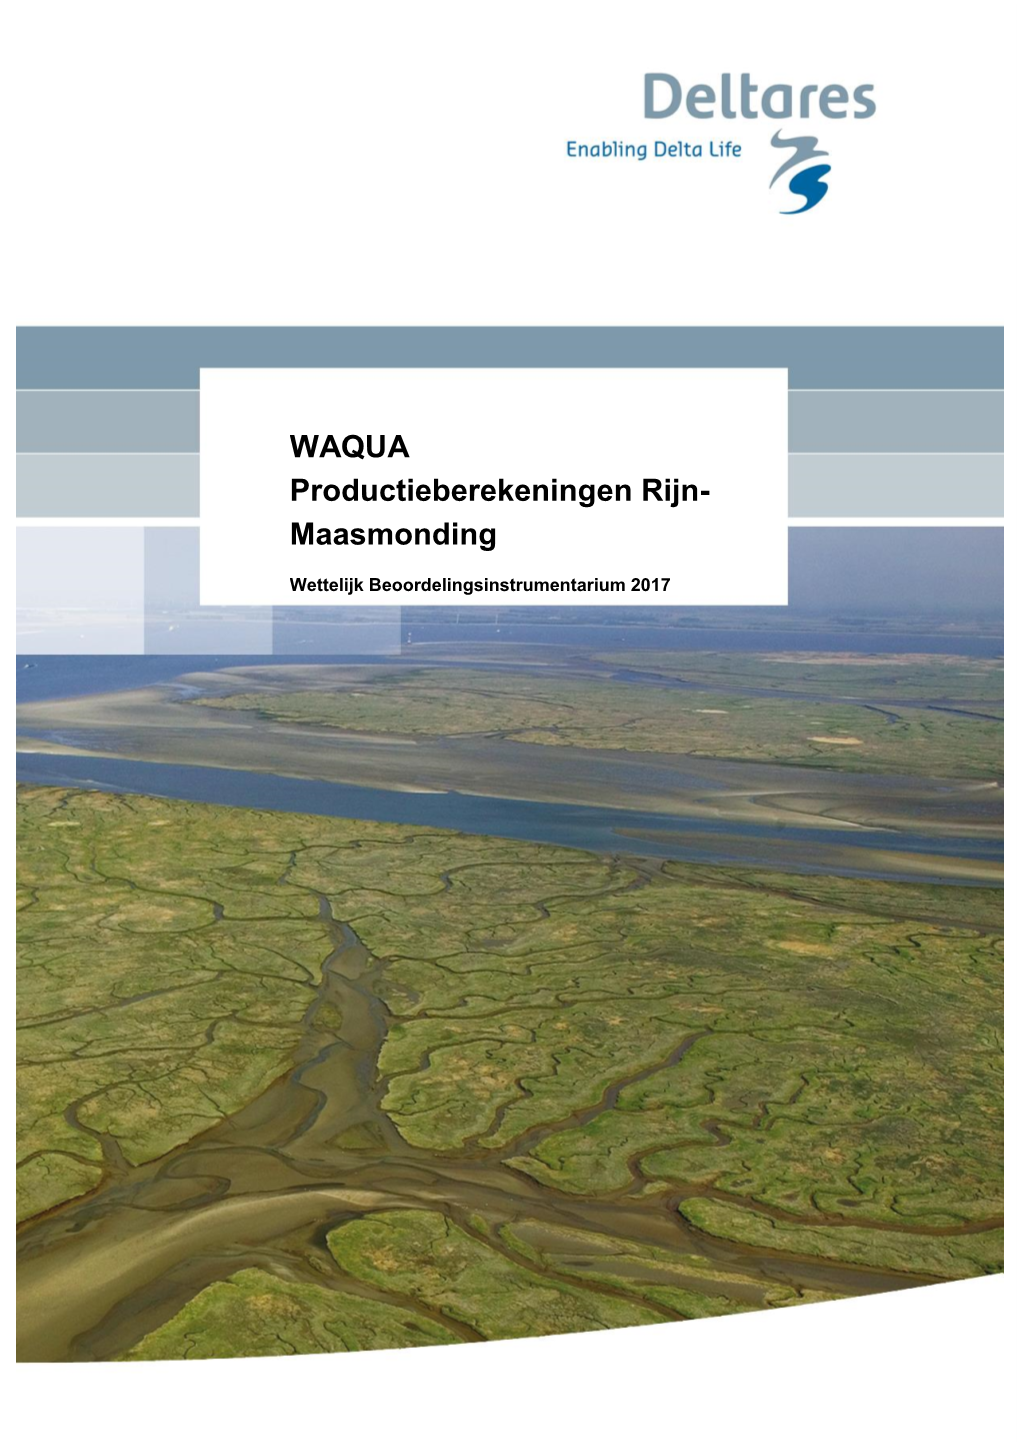 WAQUA Productieberekeningen Rijn-Maasmonding